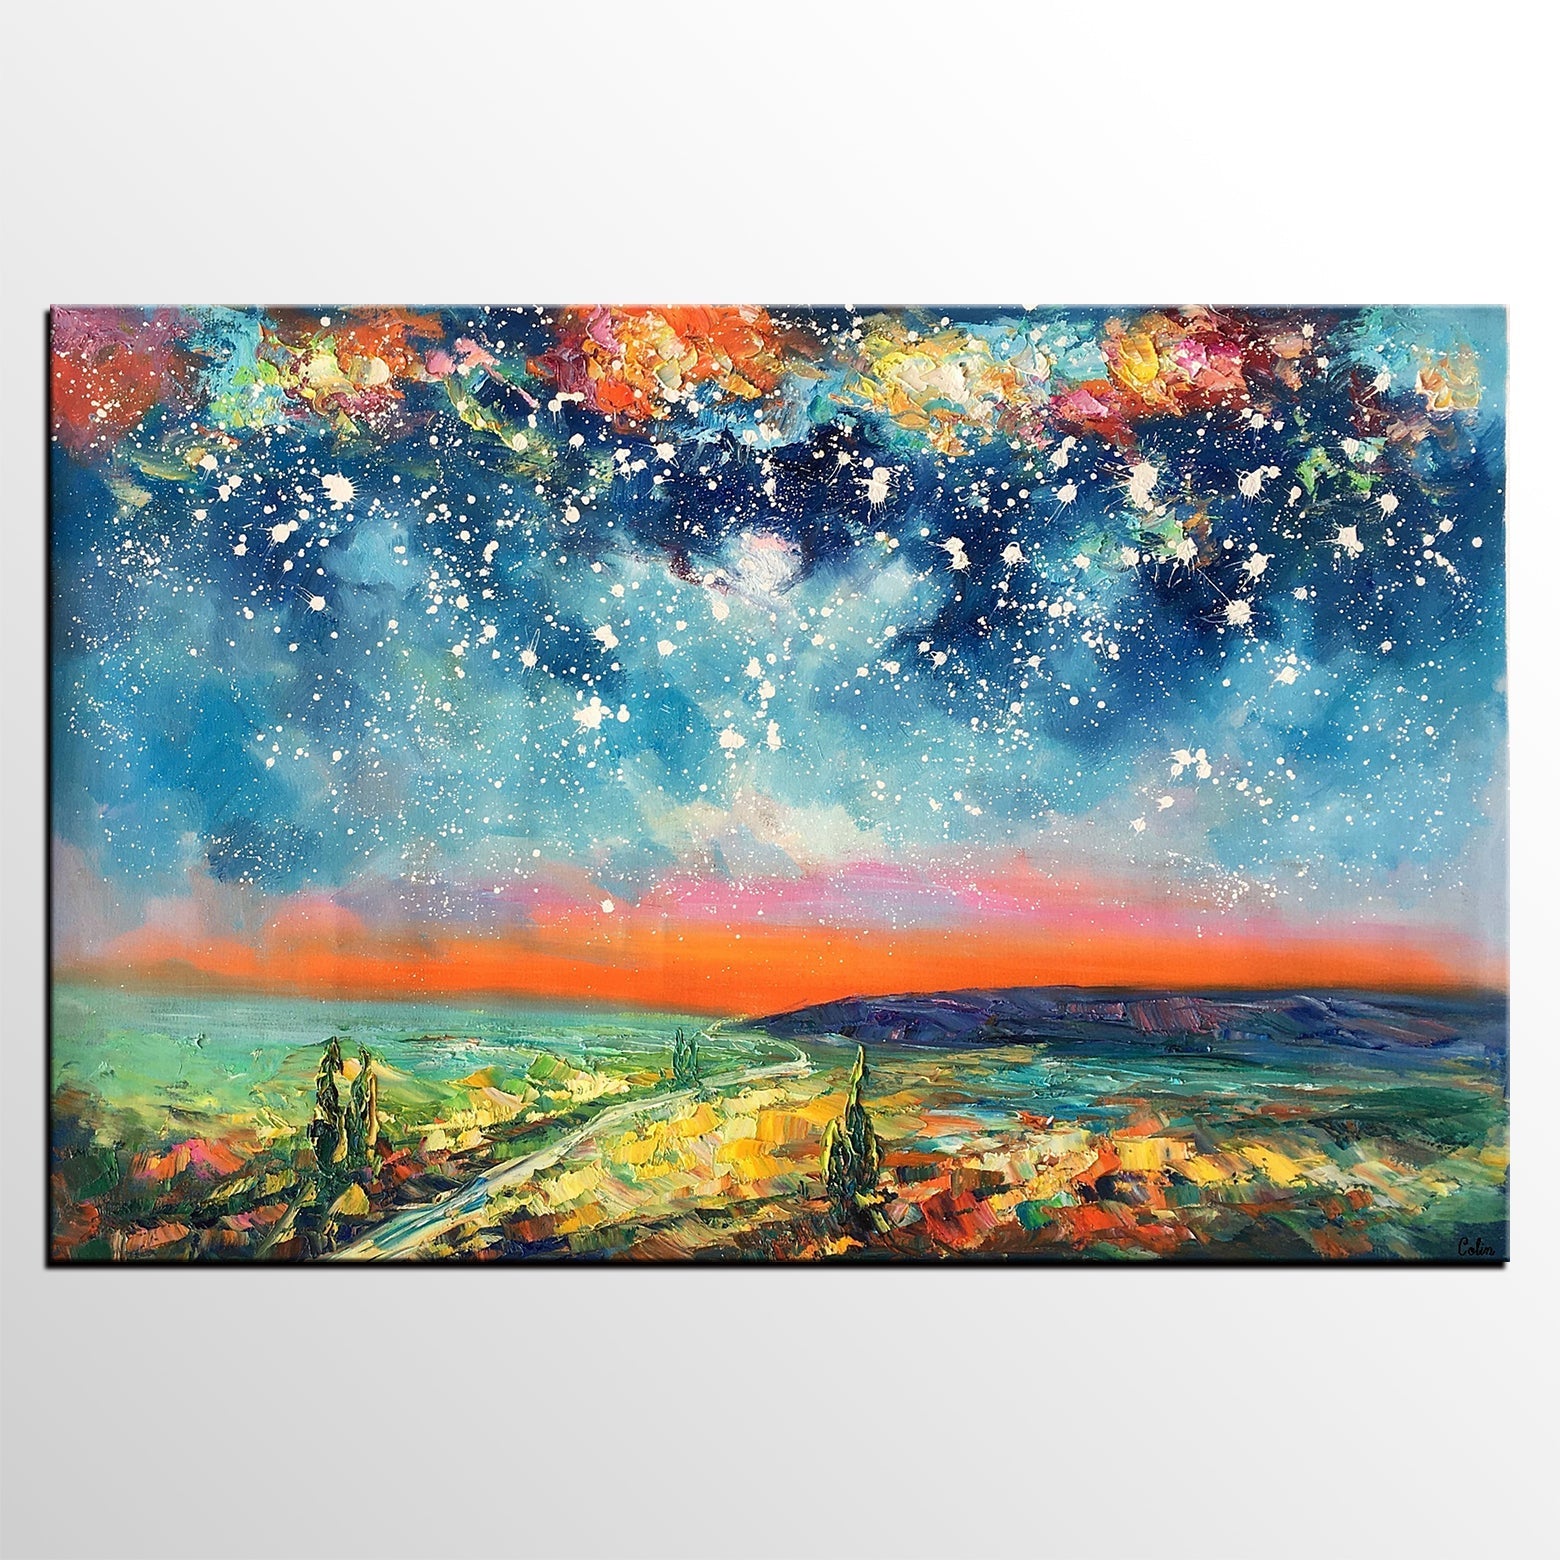 starry night sky painting